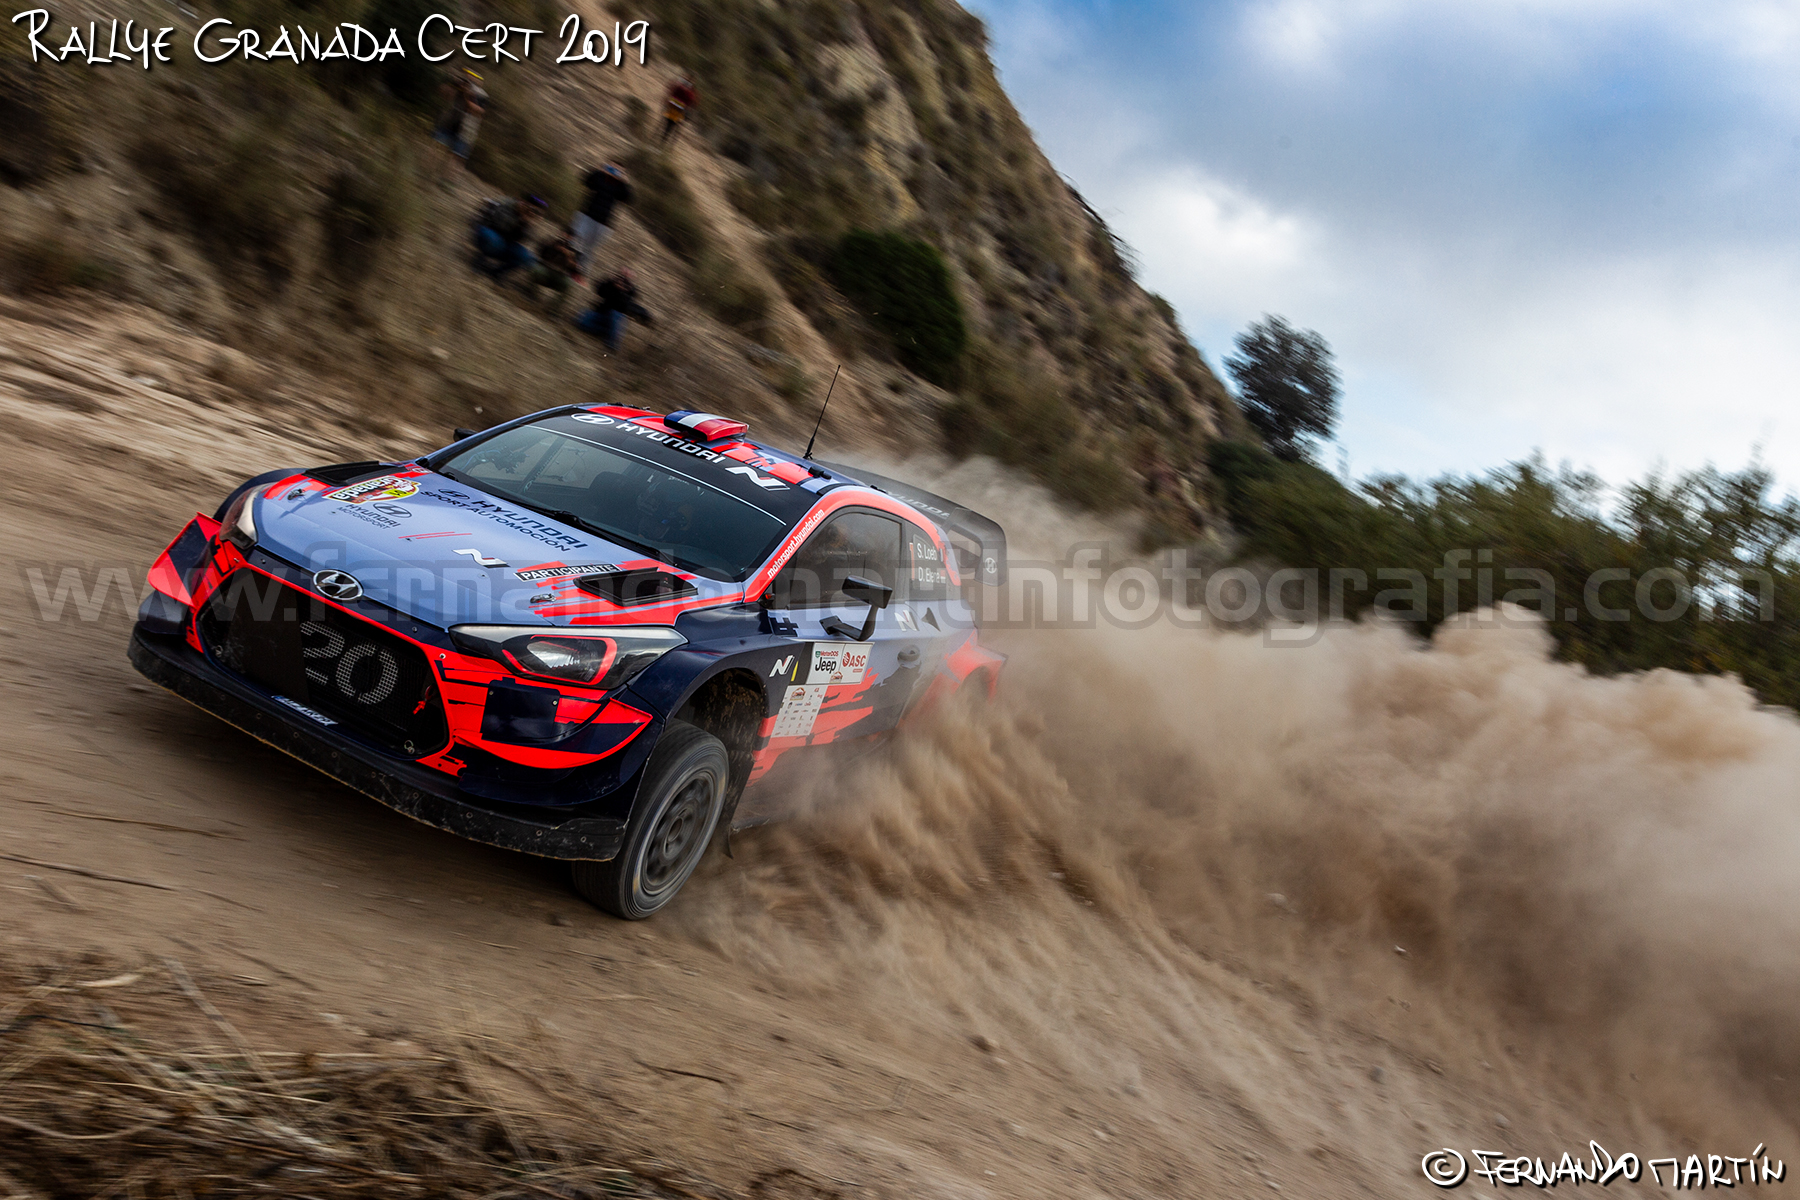 Rallye de Granada CERT 2019